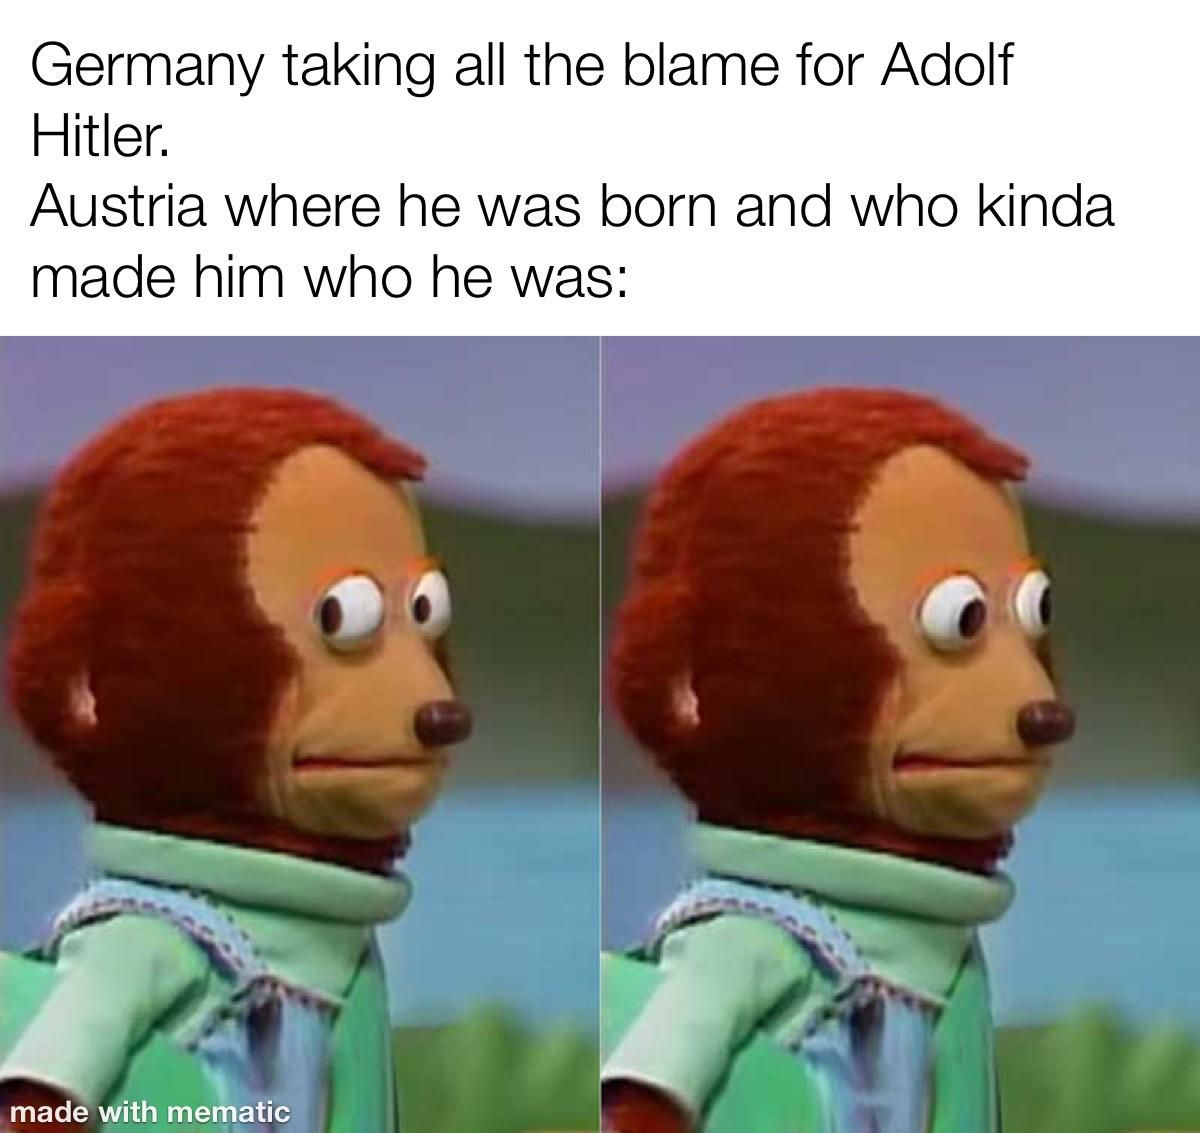 No one ever mentions Austria